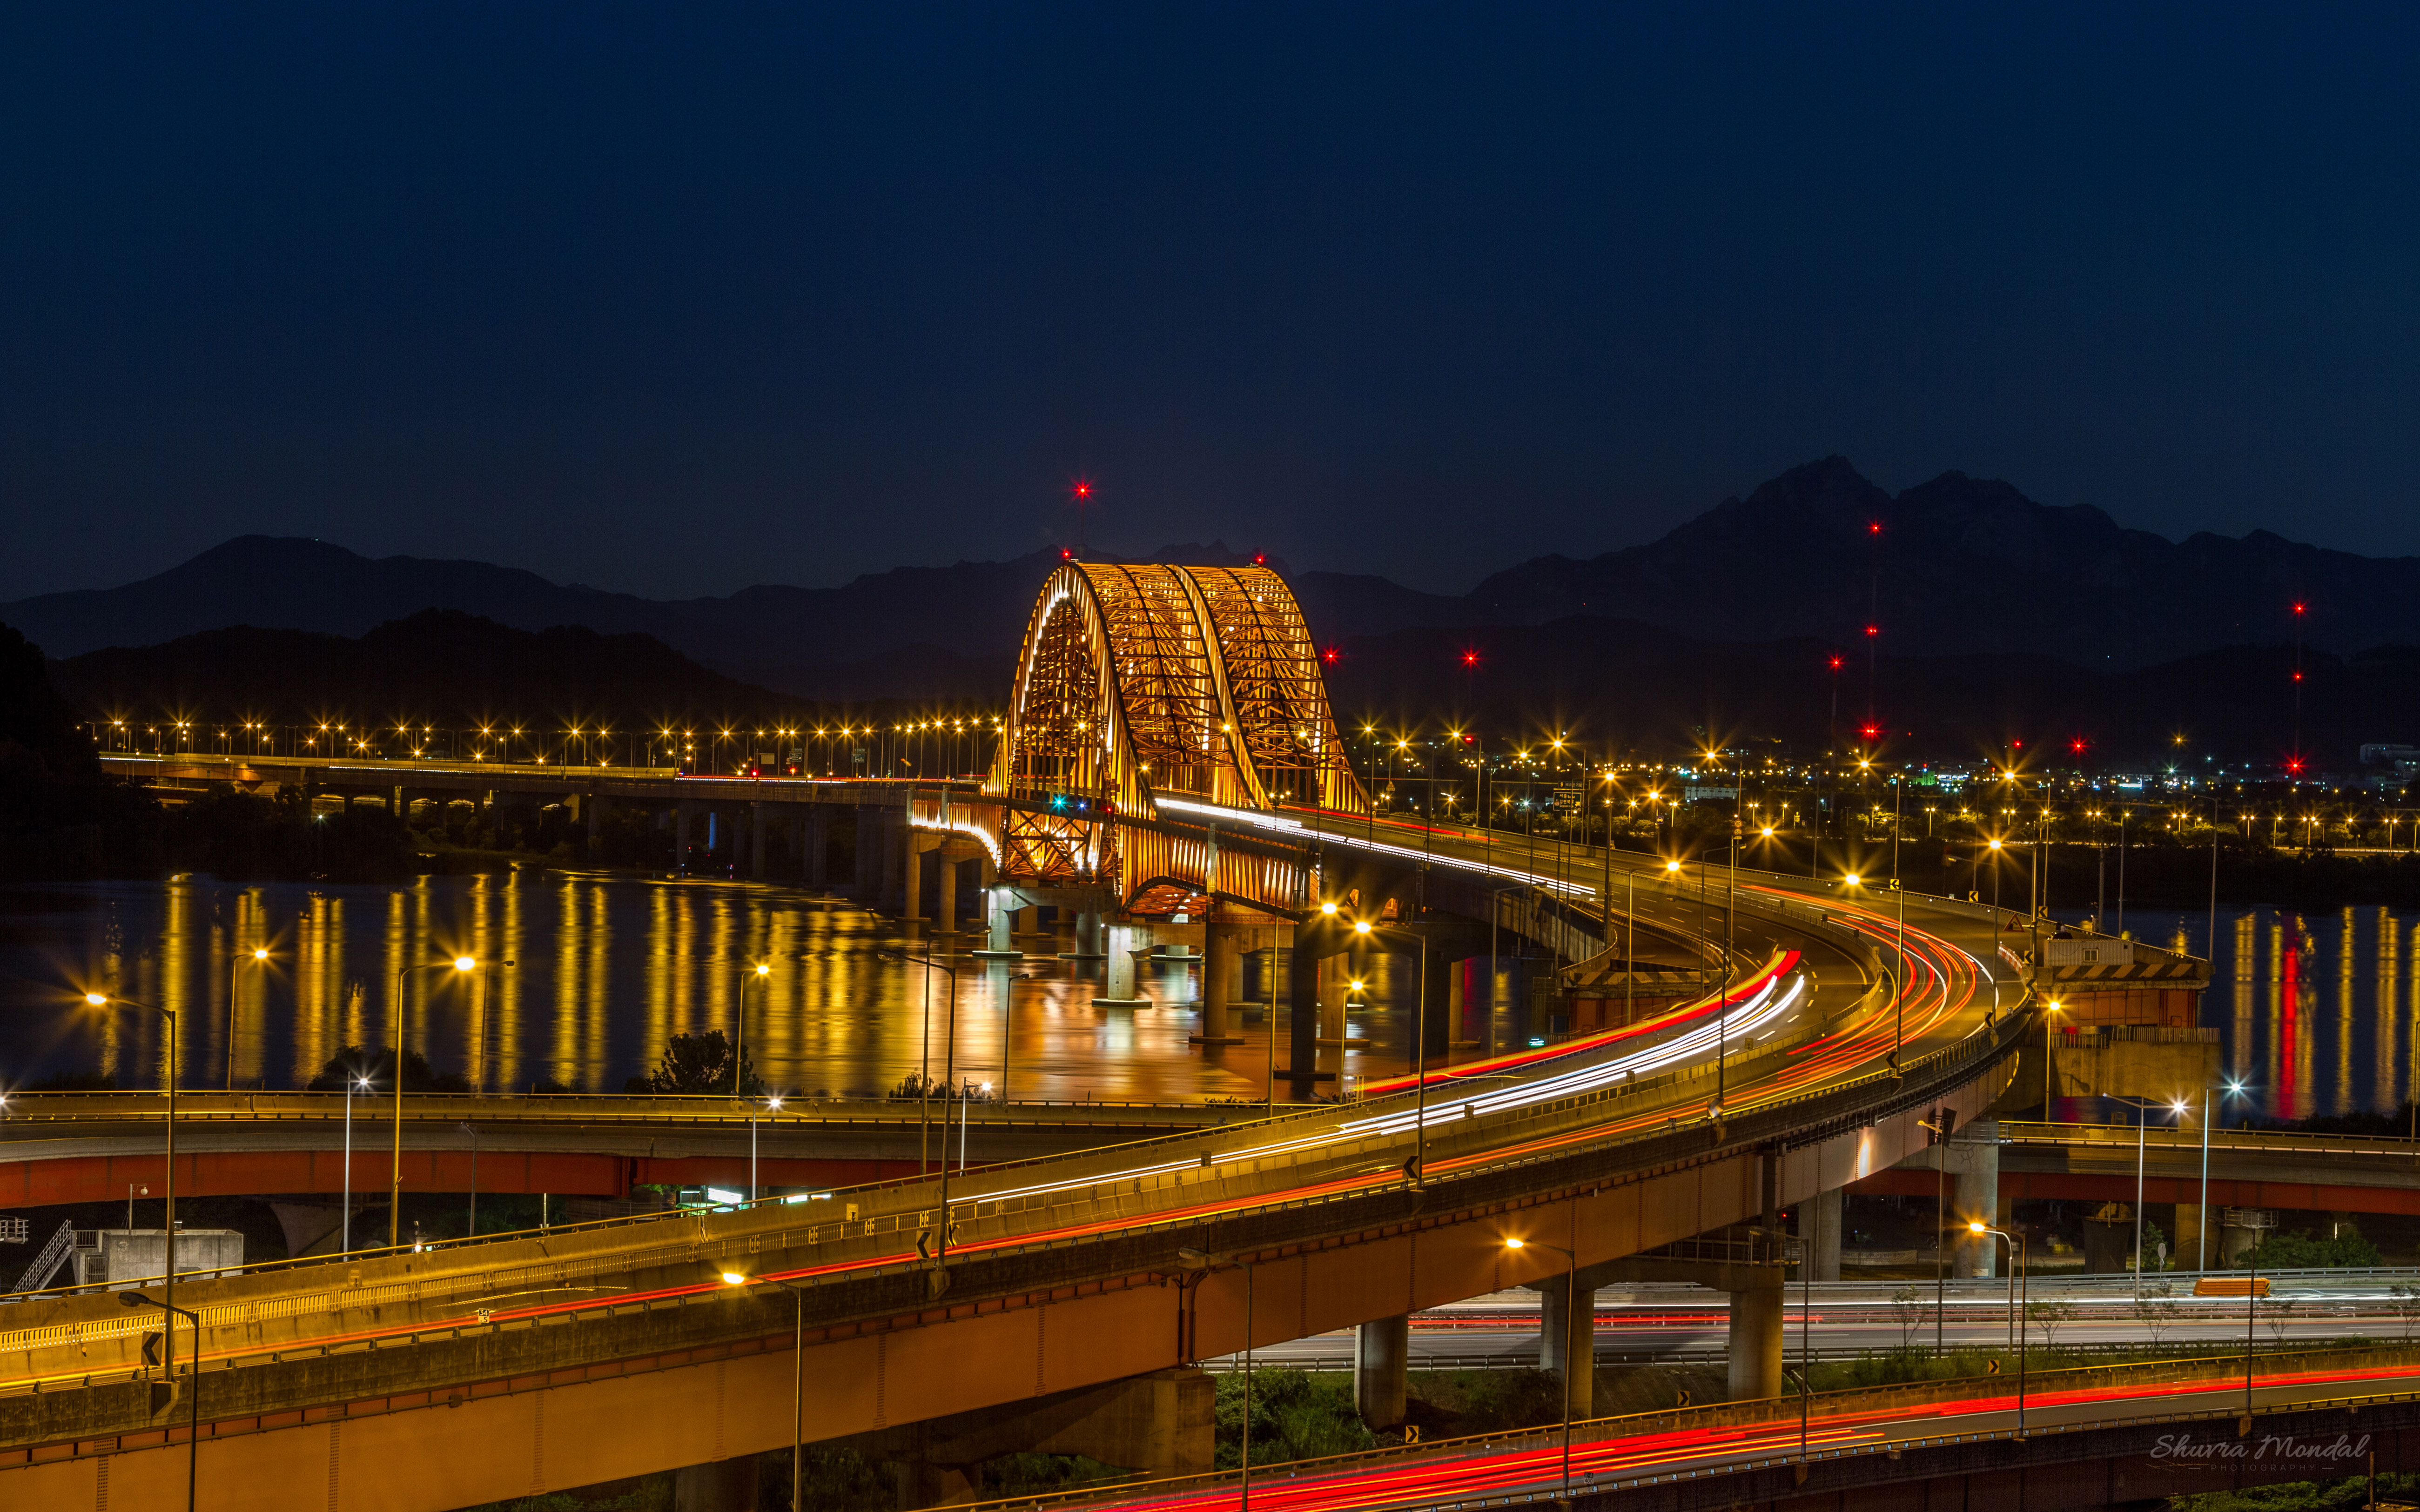 Seoul Banghwa Bridge Of The Han River In South Korea Length Of 2.5 Km